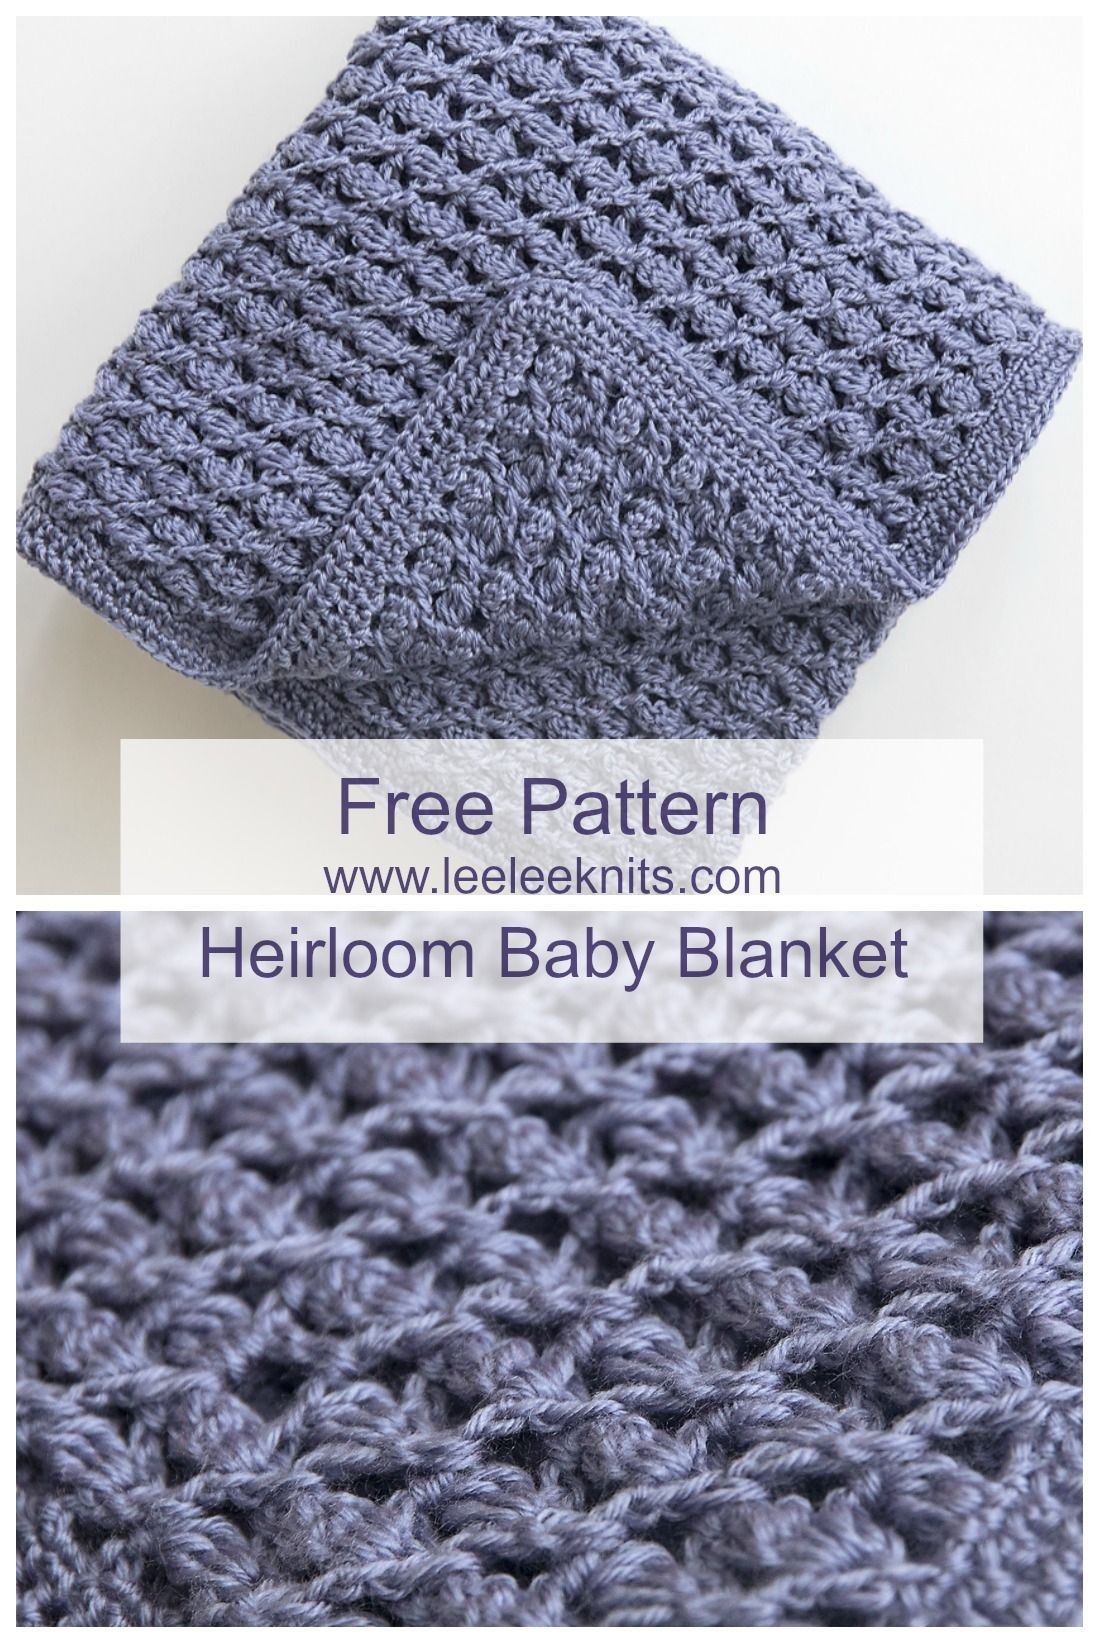 Crochet Baby Shawls Free Patterns Free Heirloom Ba Blanket Crochet Pattern Crochet Pinterest